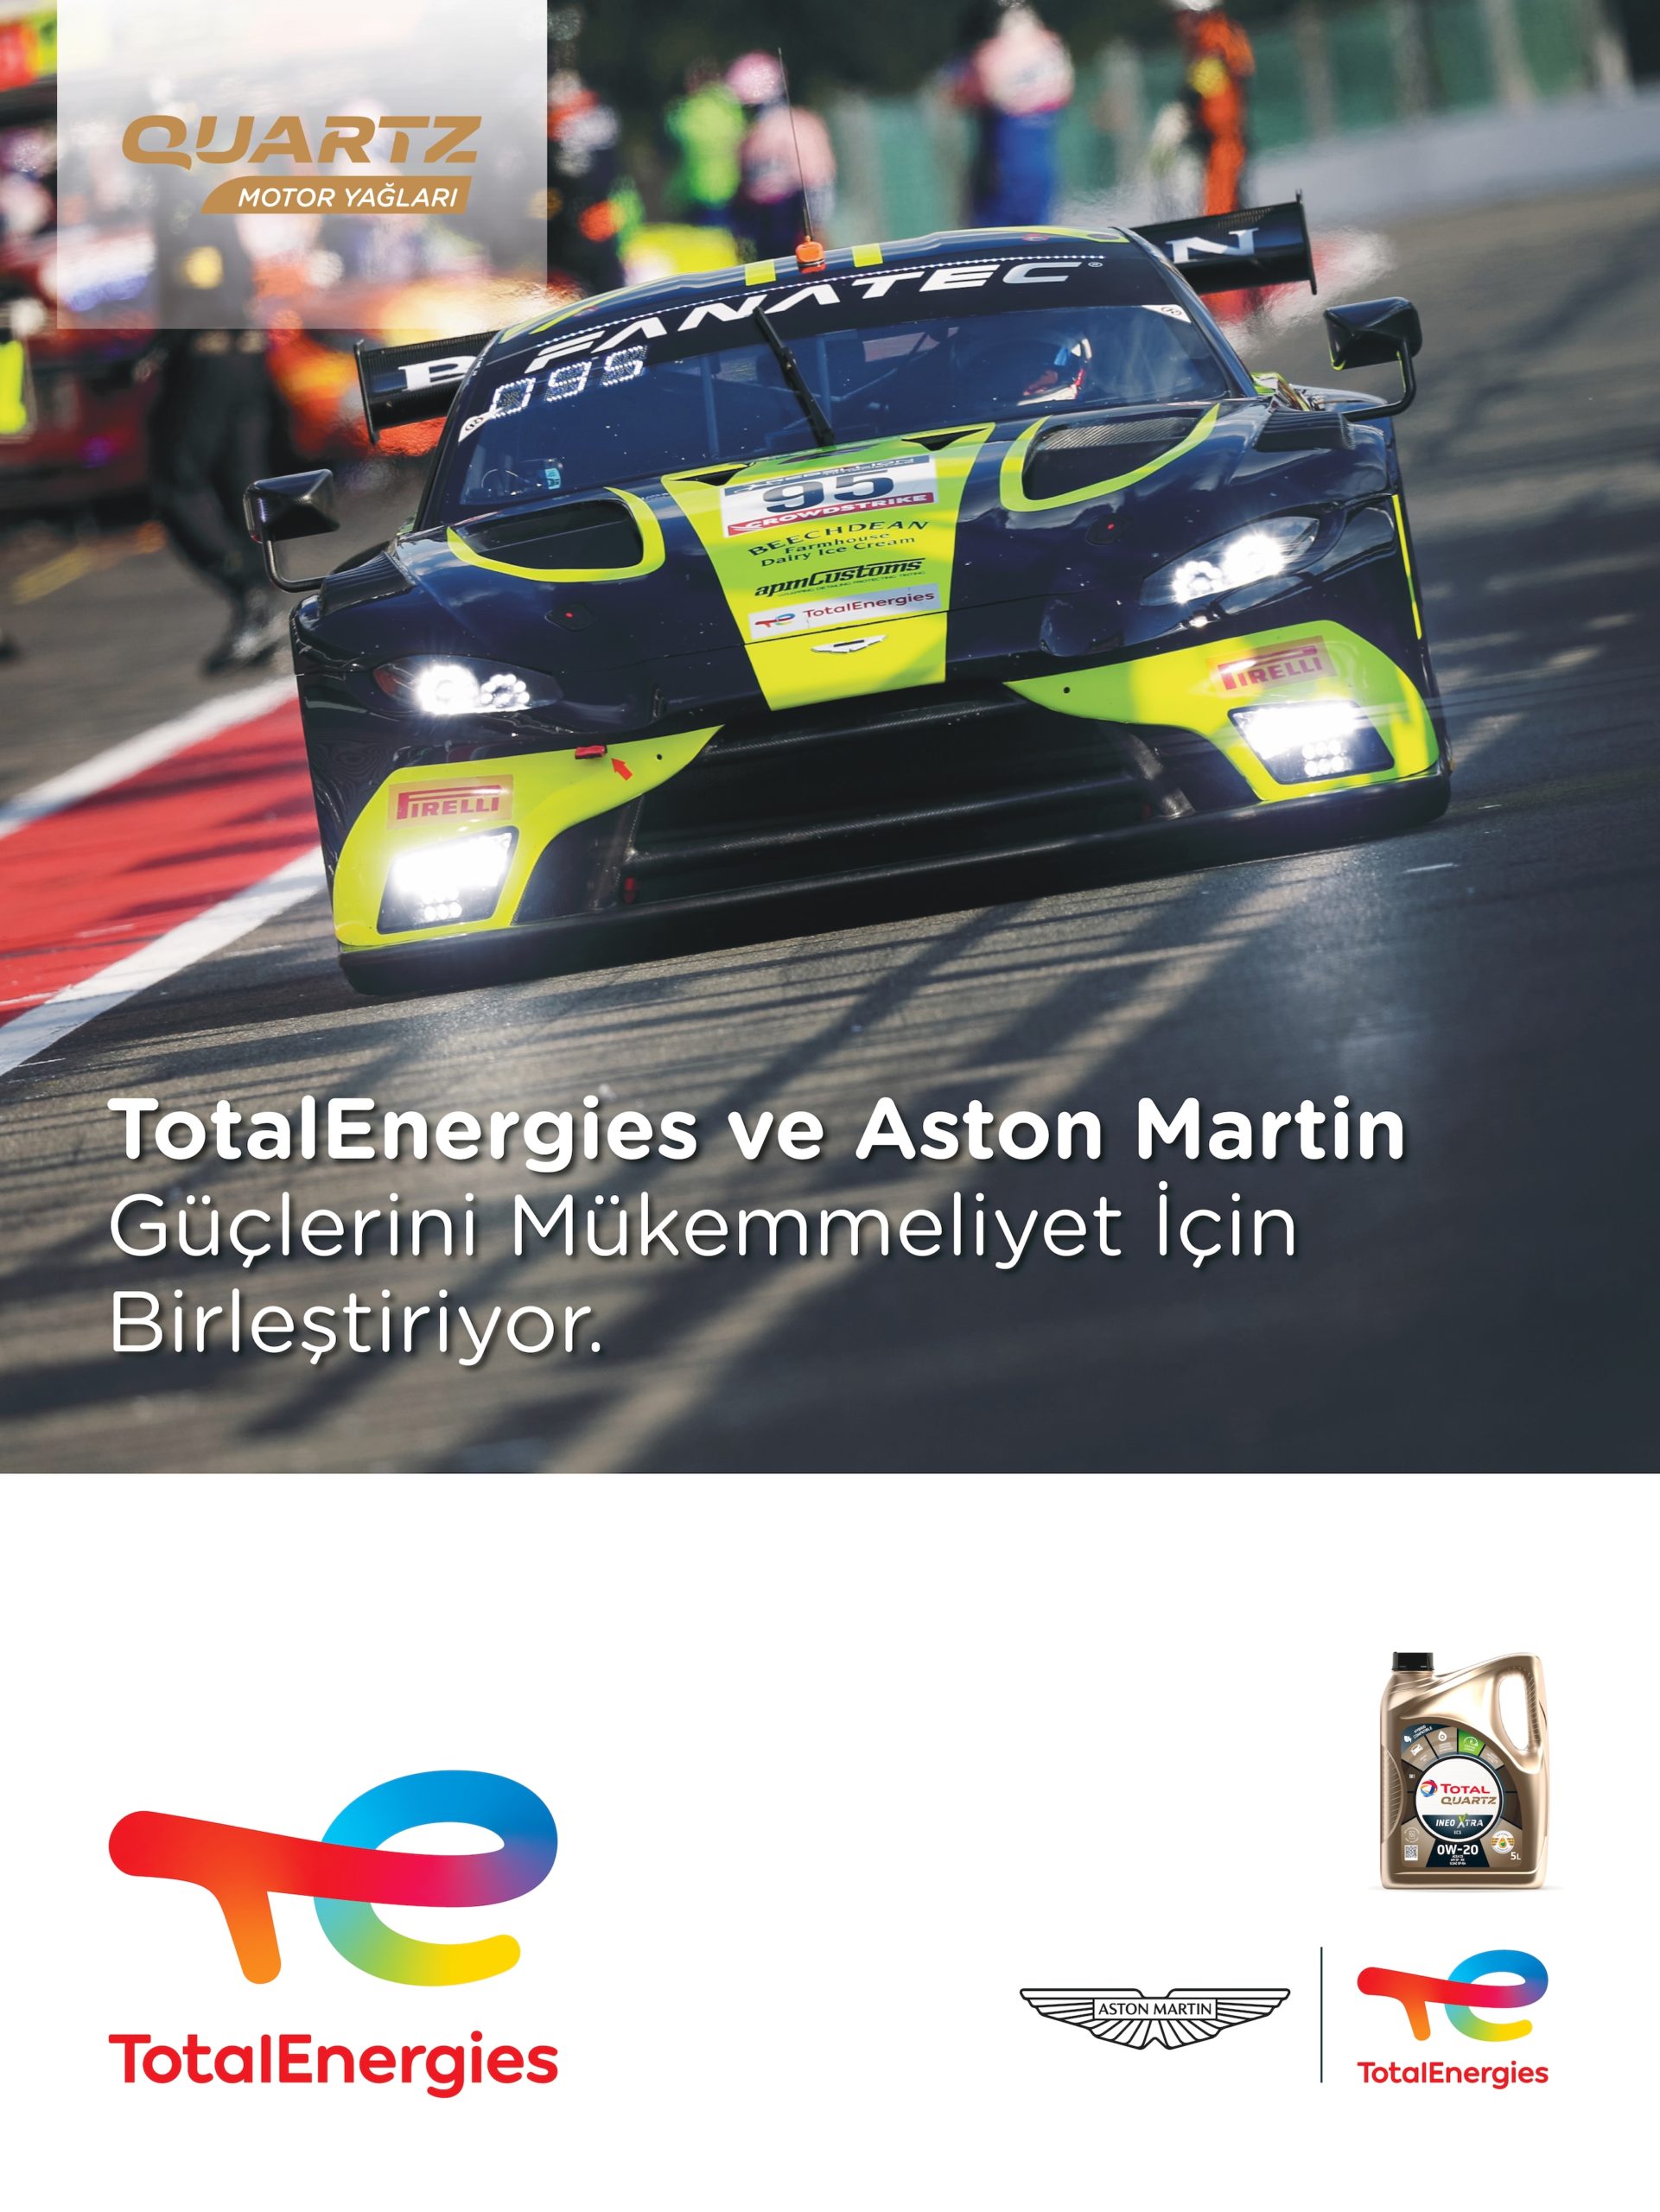 TotalEnergies ve Aston Martin’den iş birliği